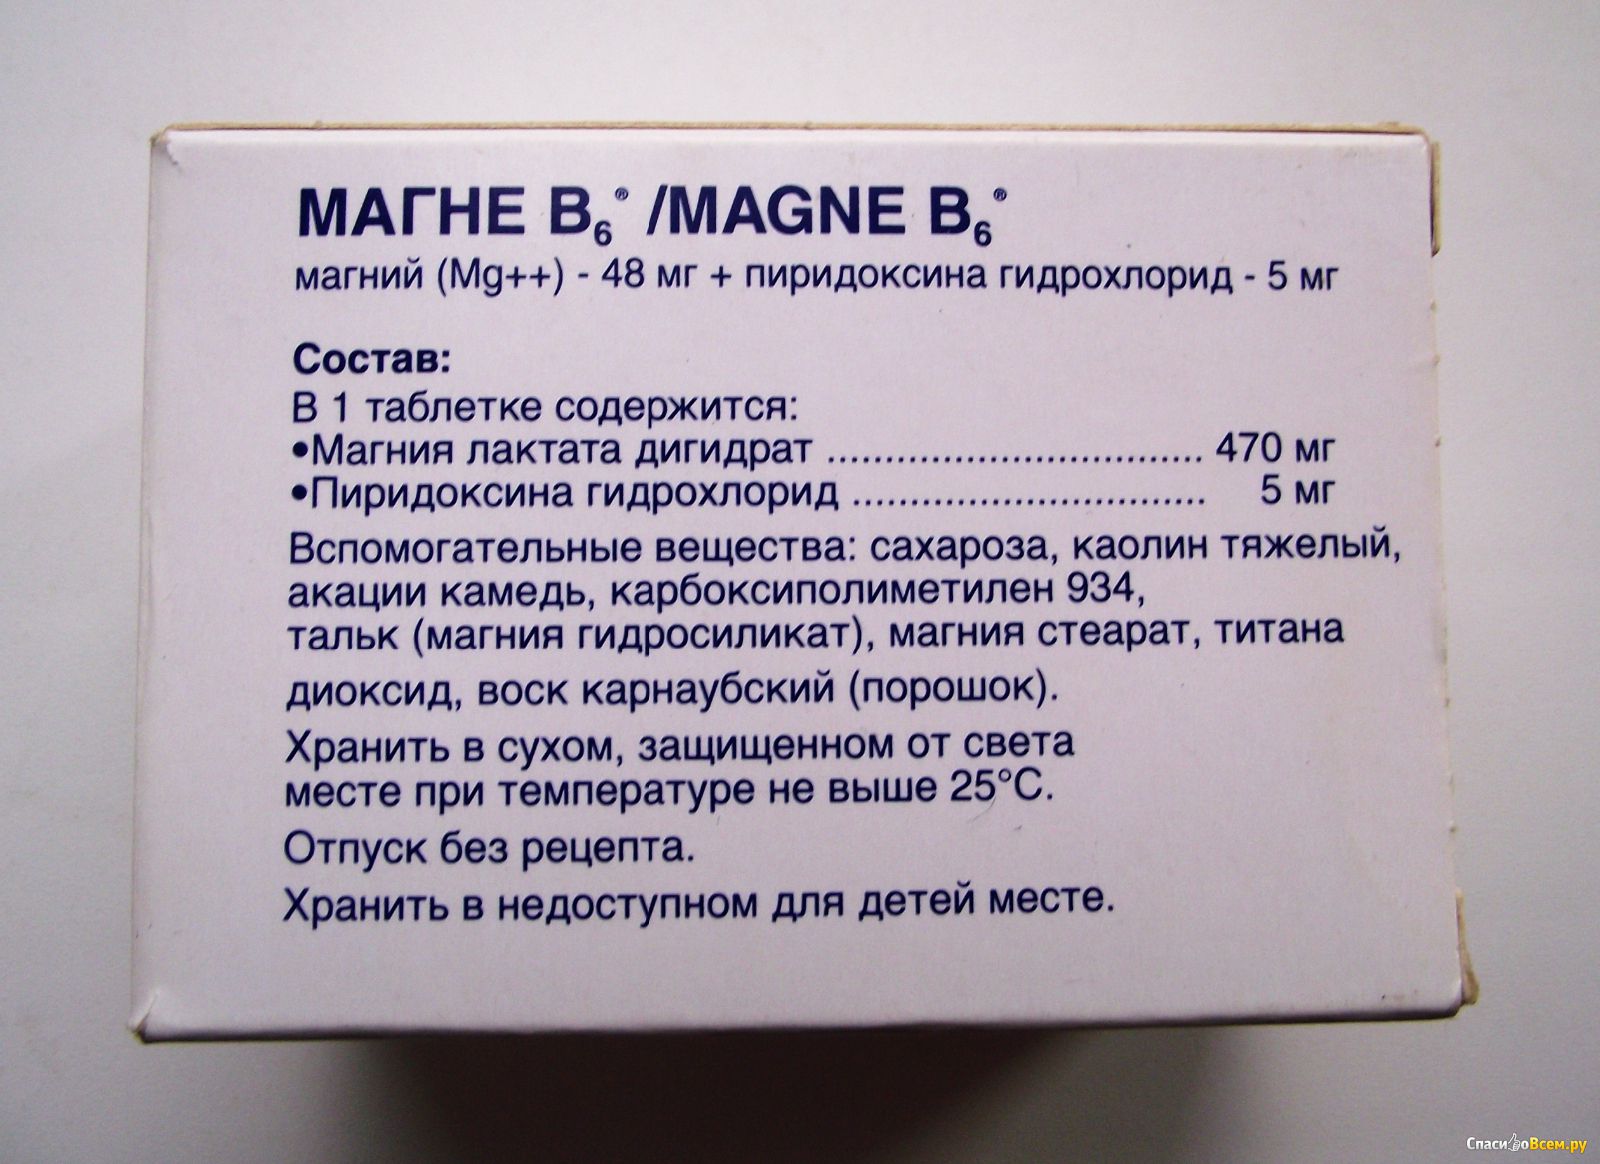 Как принимать таблетки б6. Магний в6 состав. Суточная дозировка магния в6. Магний б6 пиридоксина гидрохлорид.